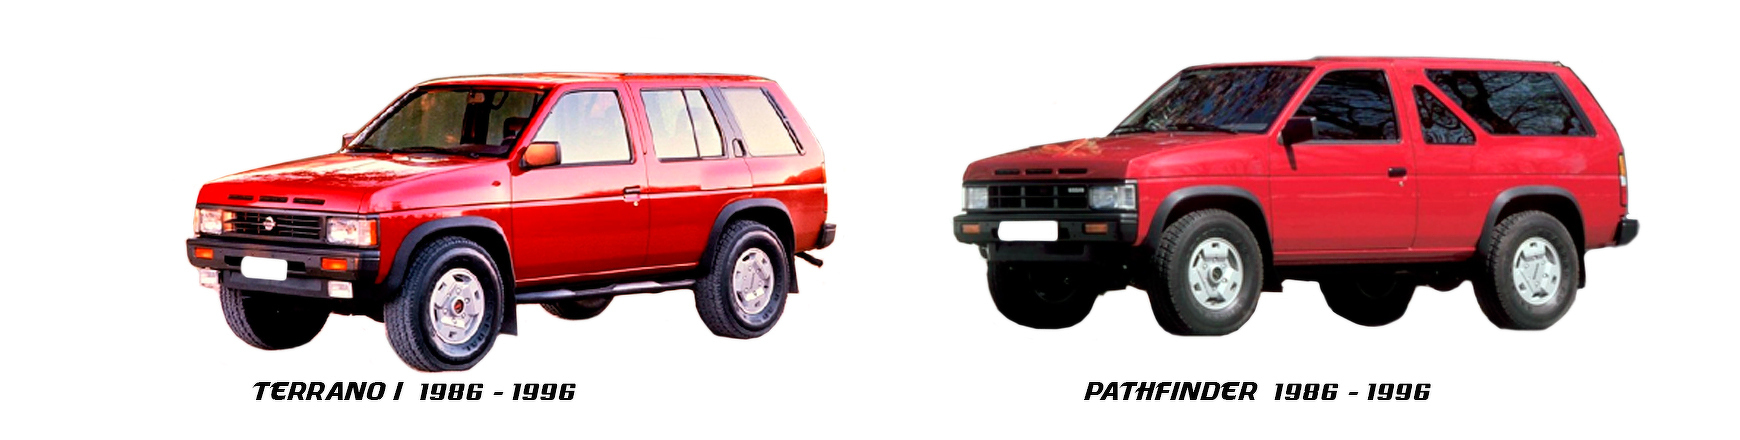 Recambios de Nissan Terrano de 1986 a 1997 al mejor precio y con envío